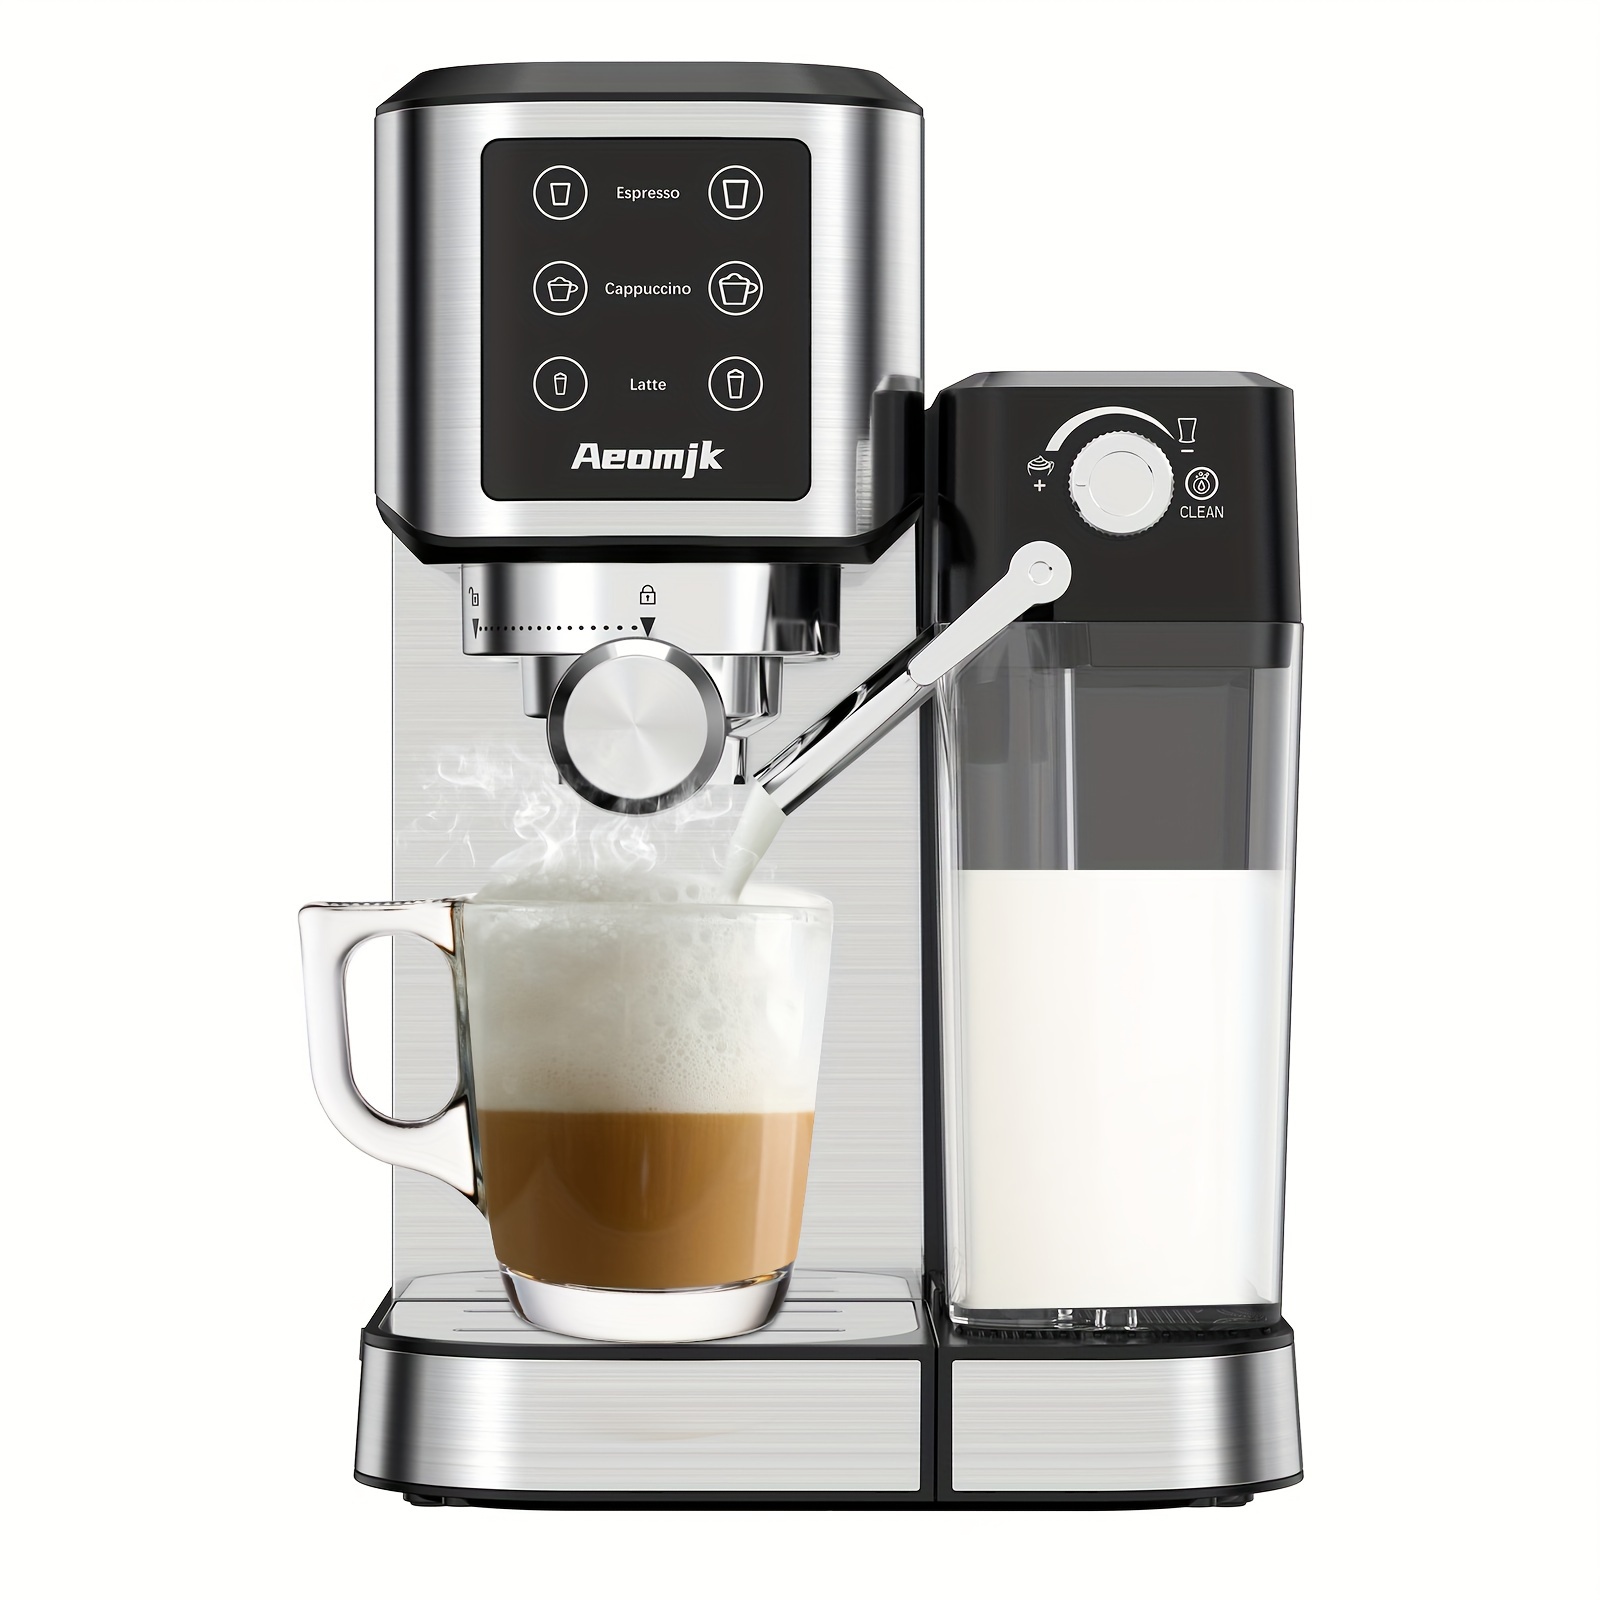 Descuentazo en esta cafetera semiautomática Breville ideal para  perfeccionar tus espressos y elaborar todo tipo de lattes